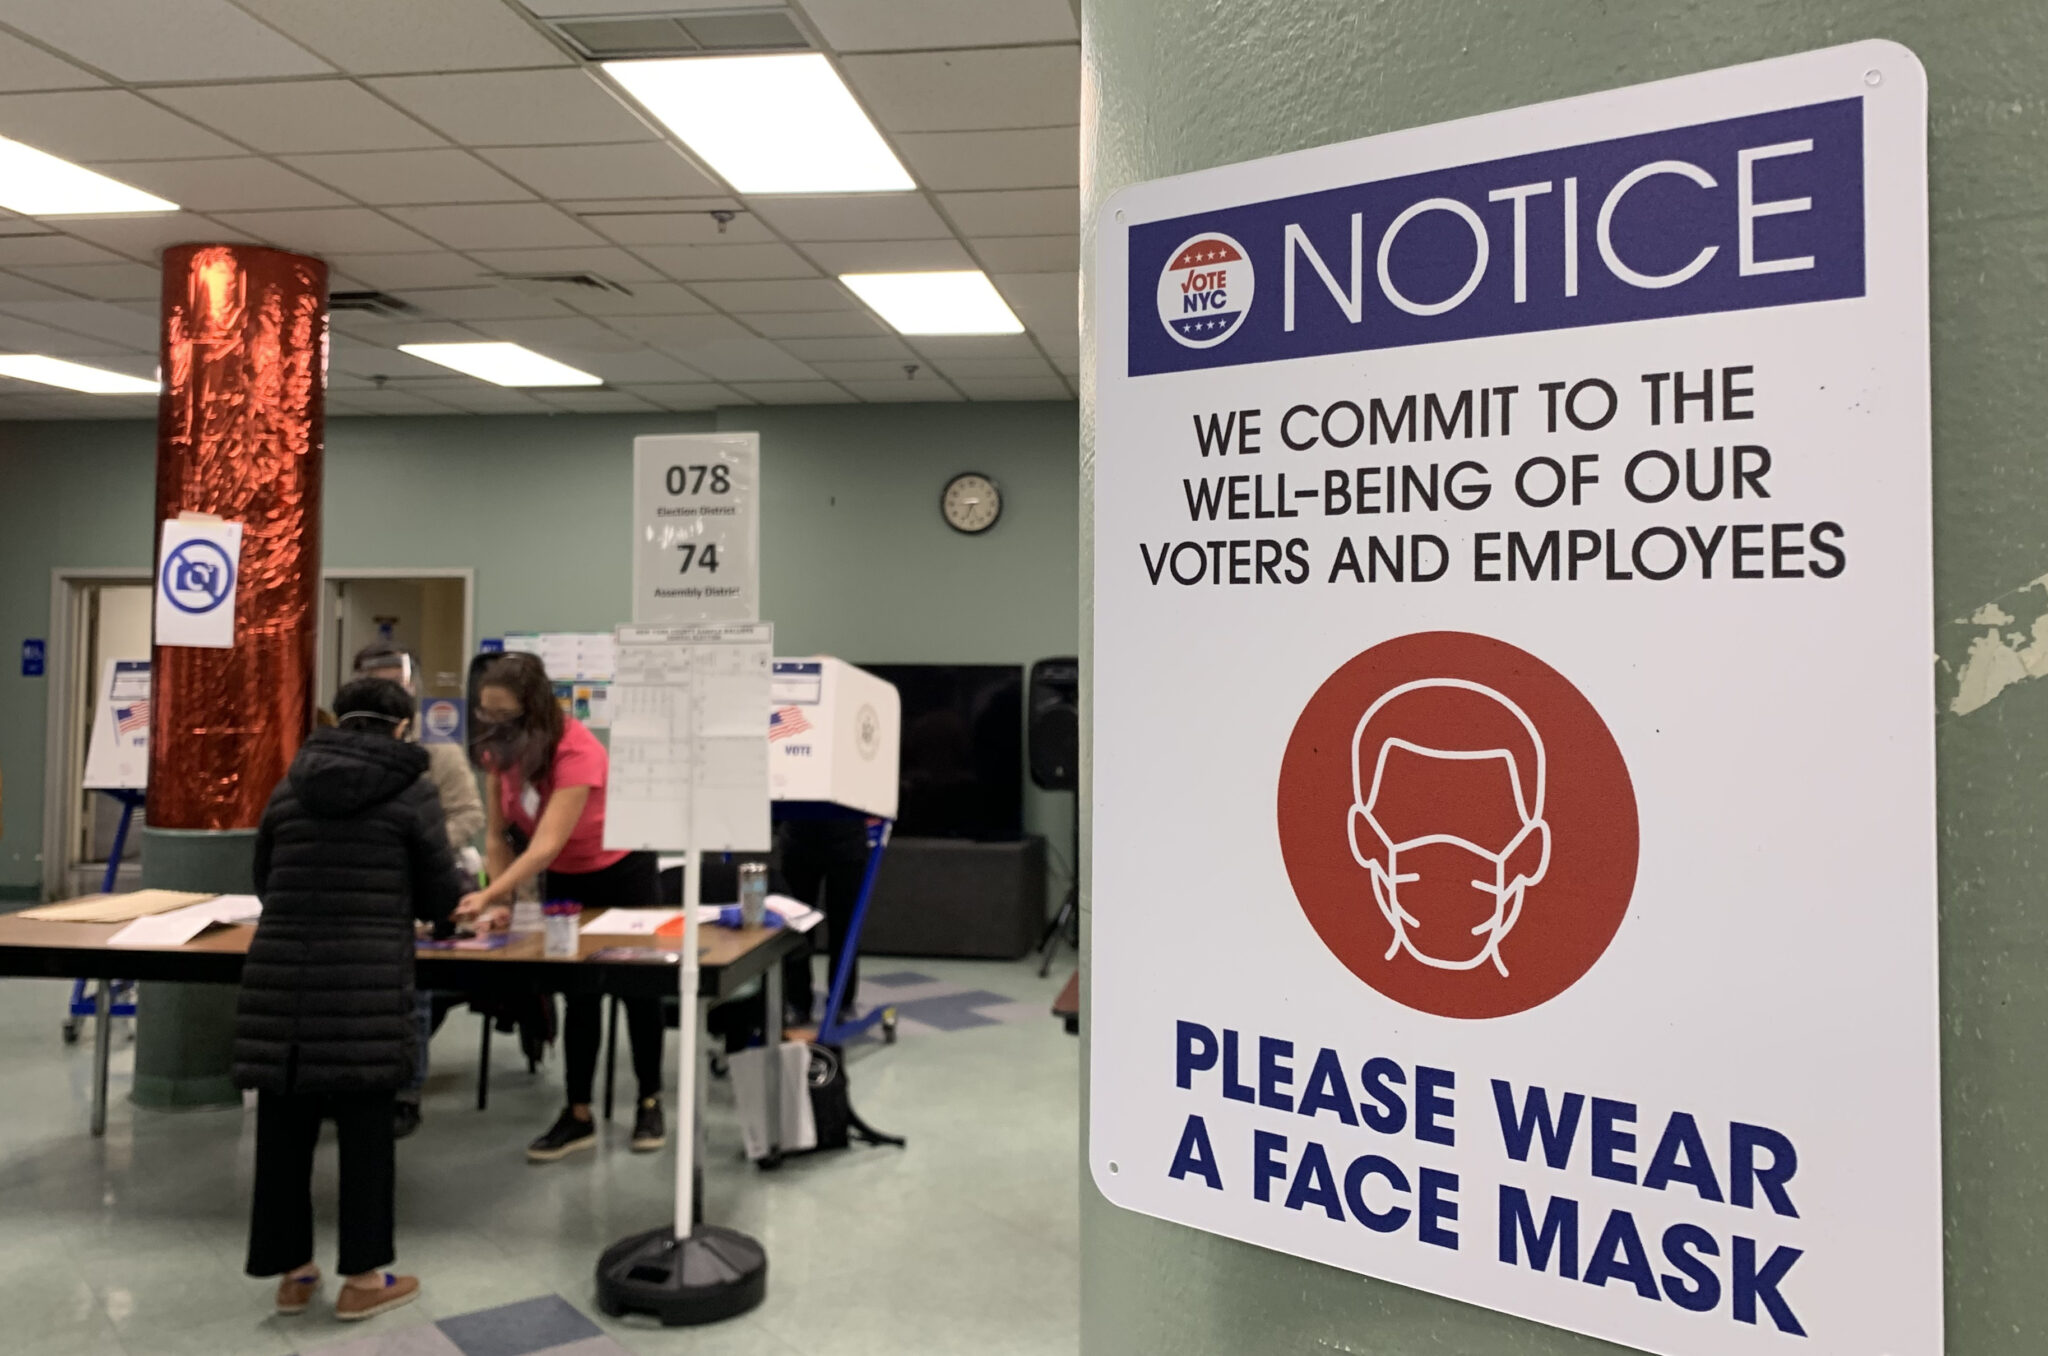 Предупреждение об обязательном наличии маски на избирательном участке. Фото Maria Khrenova/TASS/Scanpix/Leta